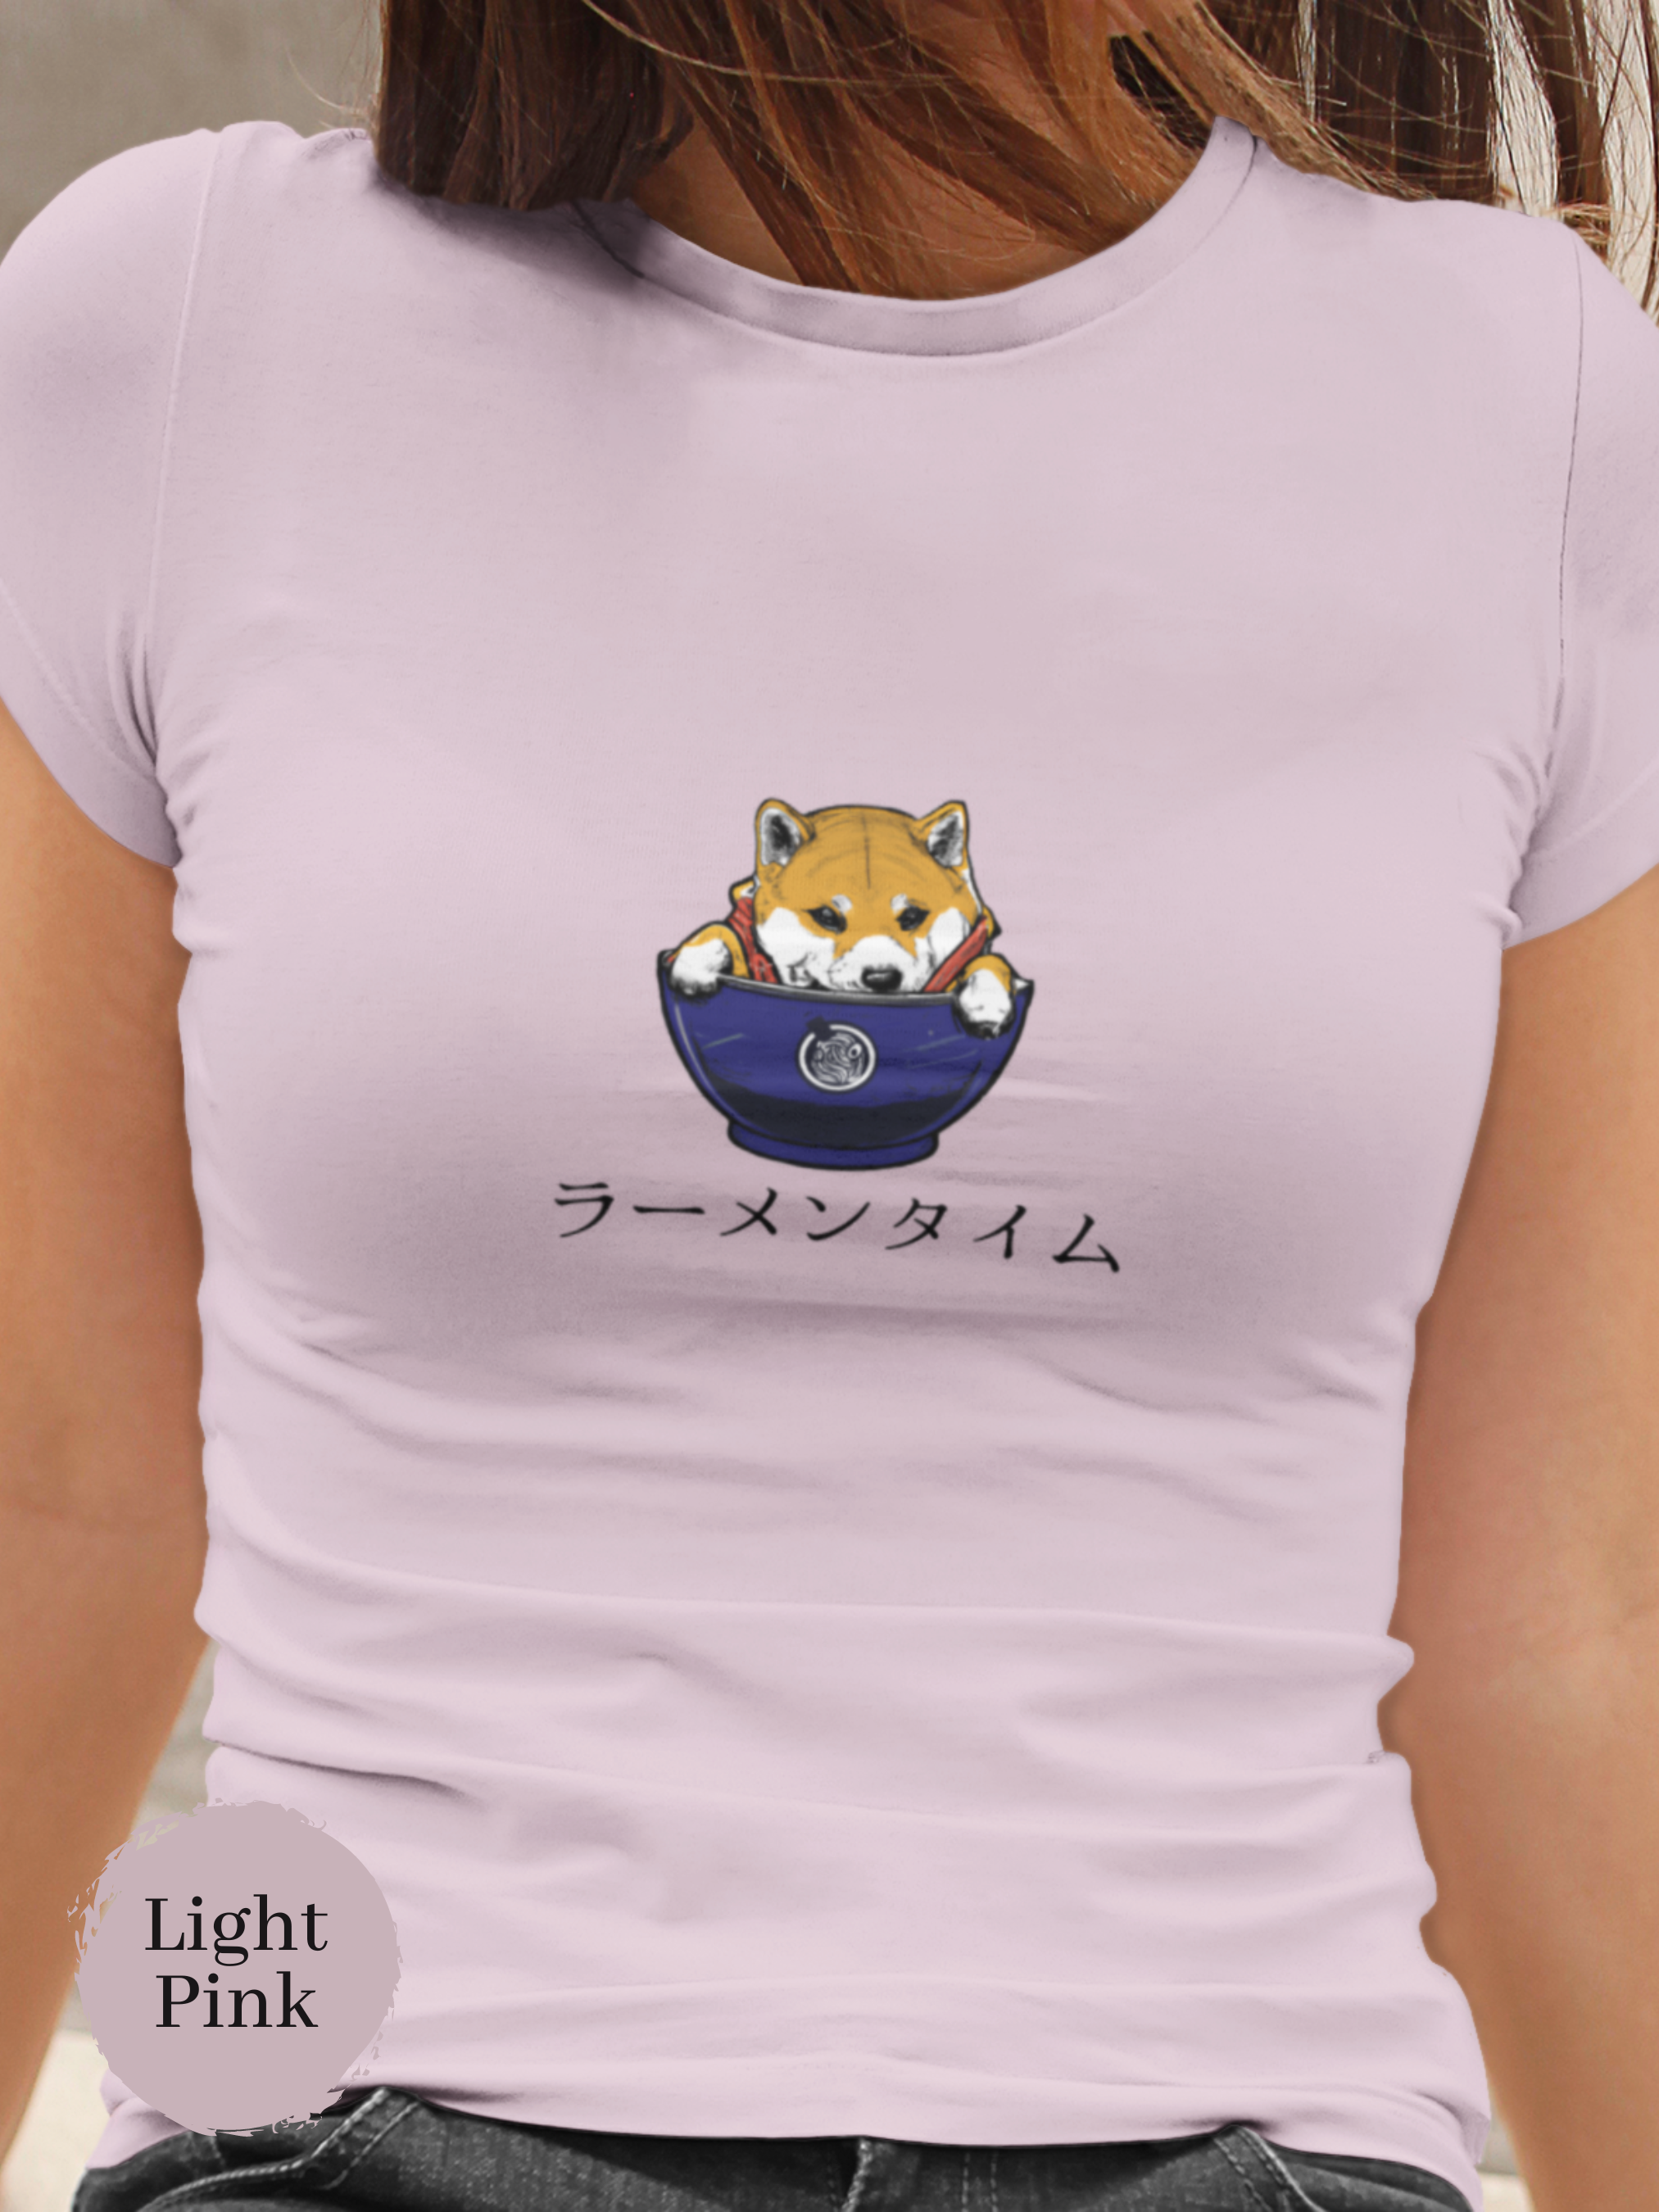 Ramen T-shirt: Ramen Time - Shiba Inu Guarding the Perfect Bowl - Japanese Foodie Shirt with Ramen Art